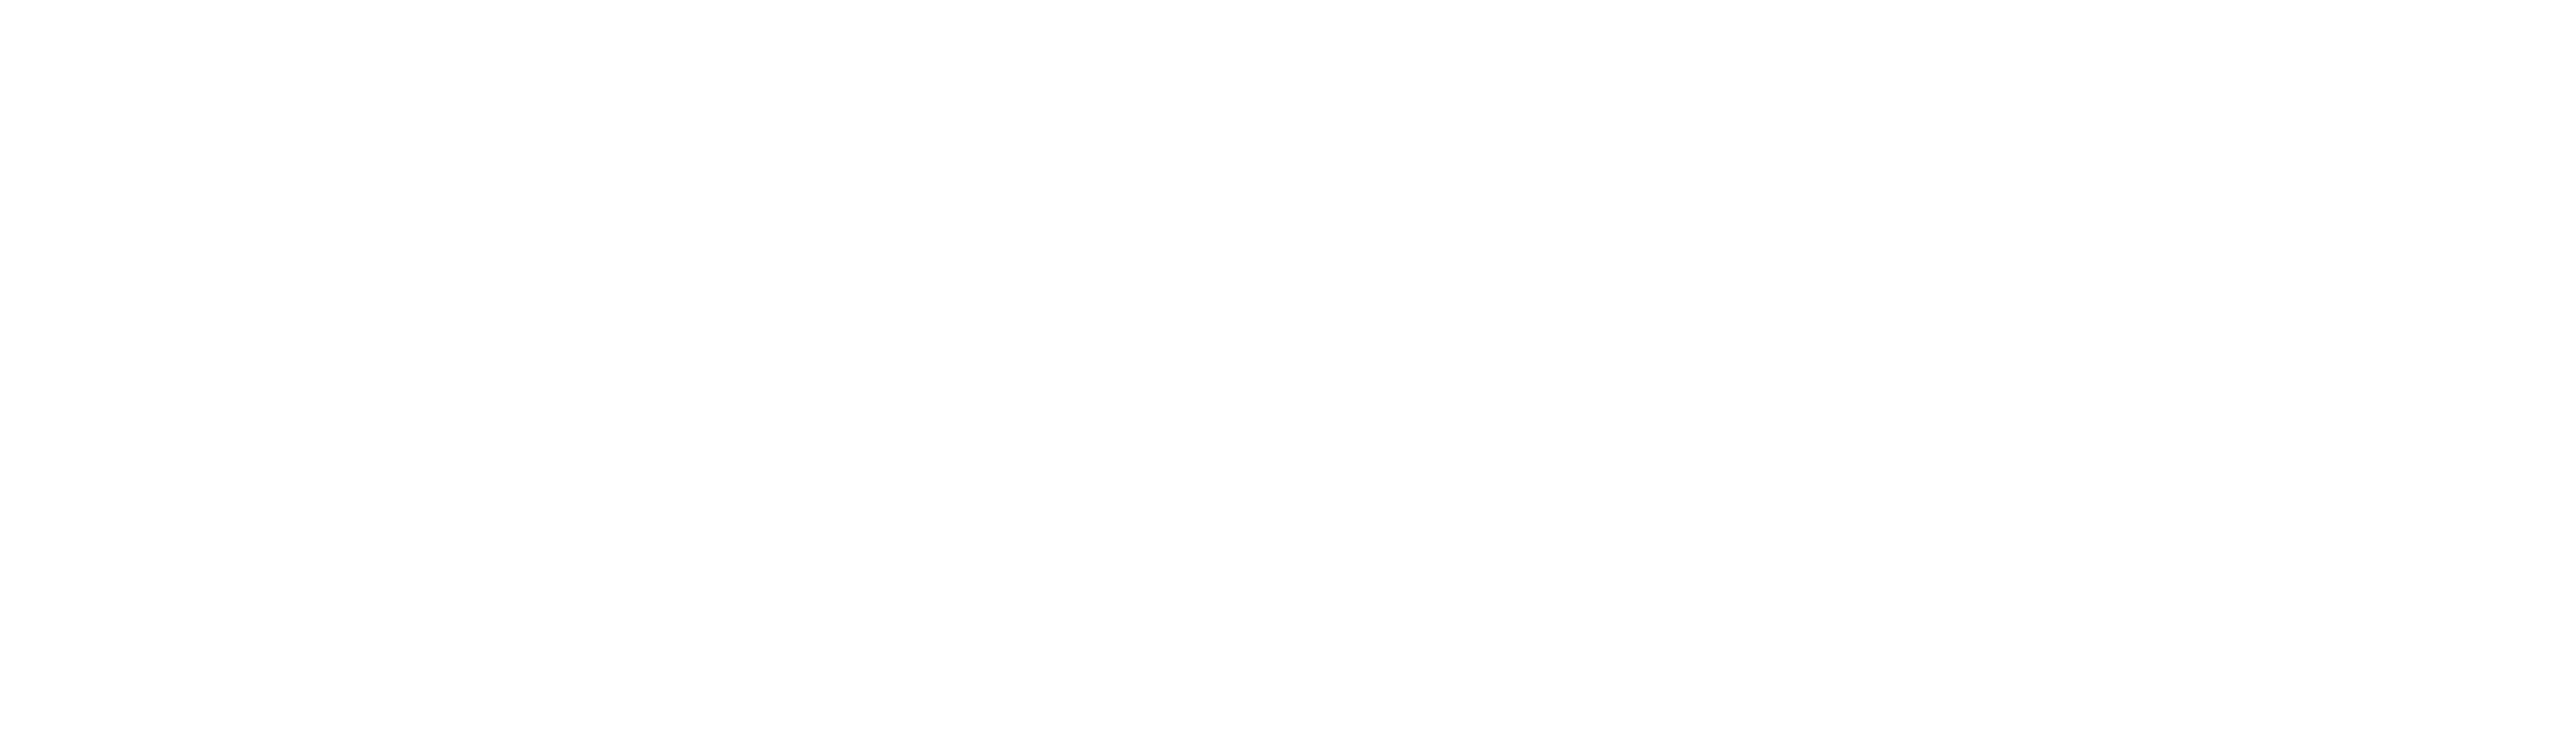 logo htxHa Phuong-01